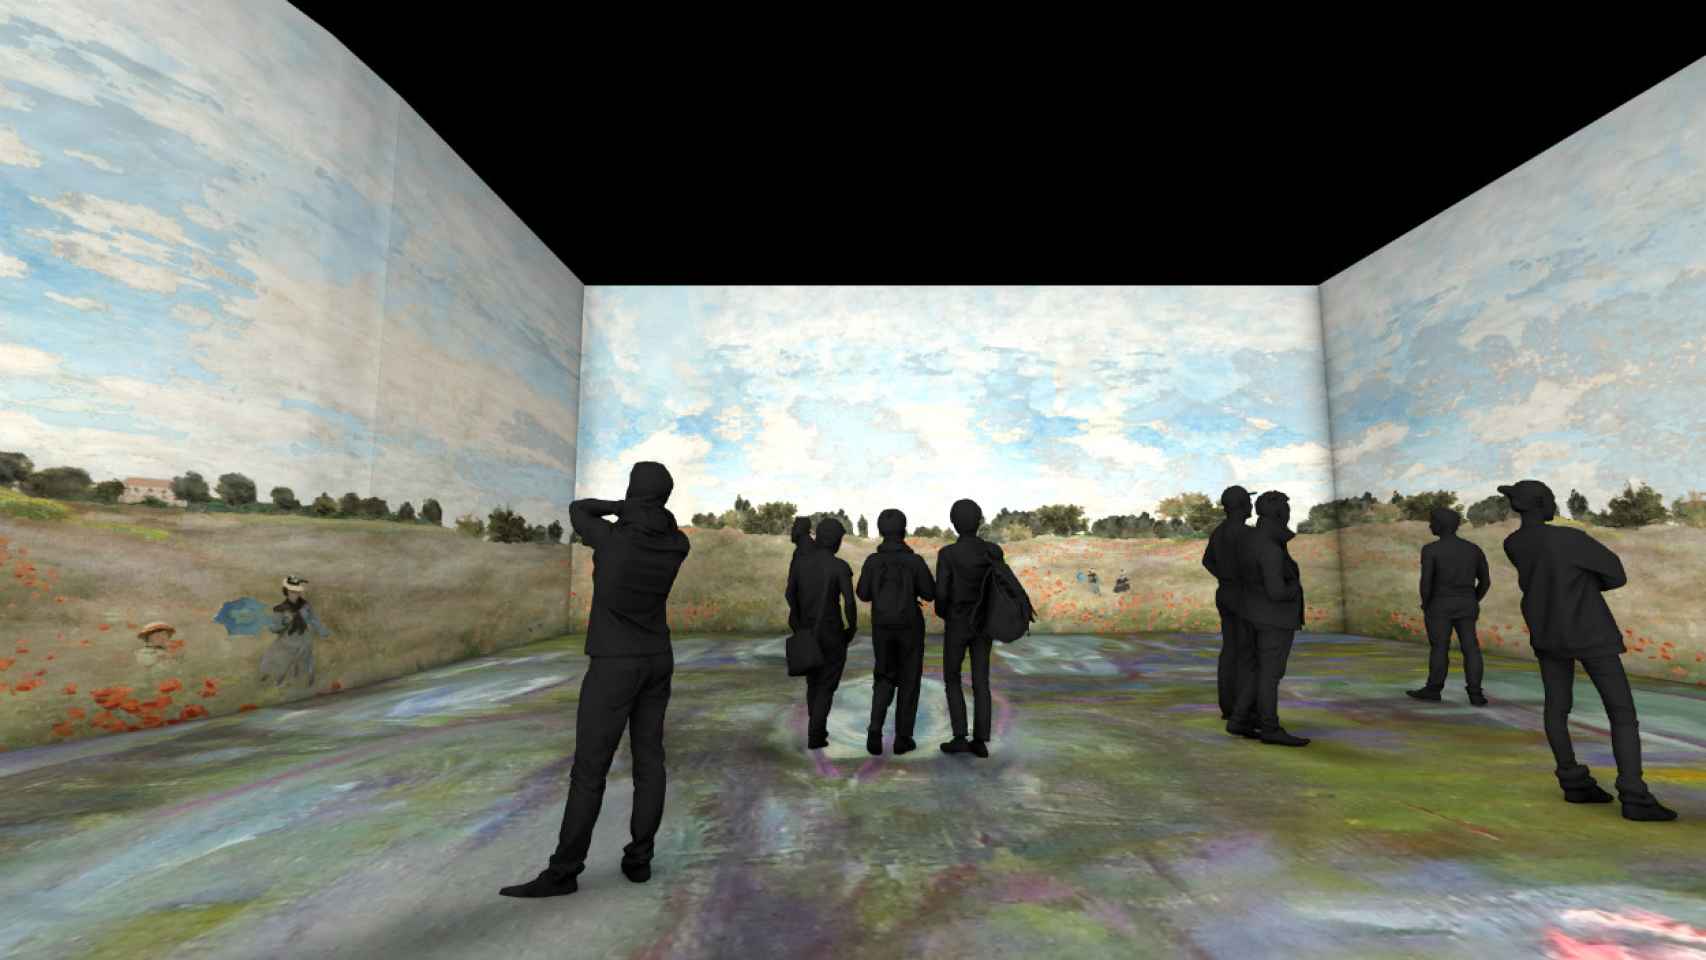 El cine Ideal acogerá la exposición del artista impresionista Claude Monet / Exhibition Hub